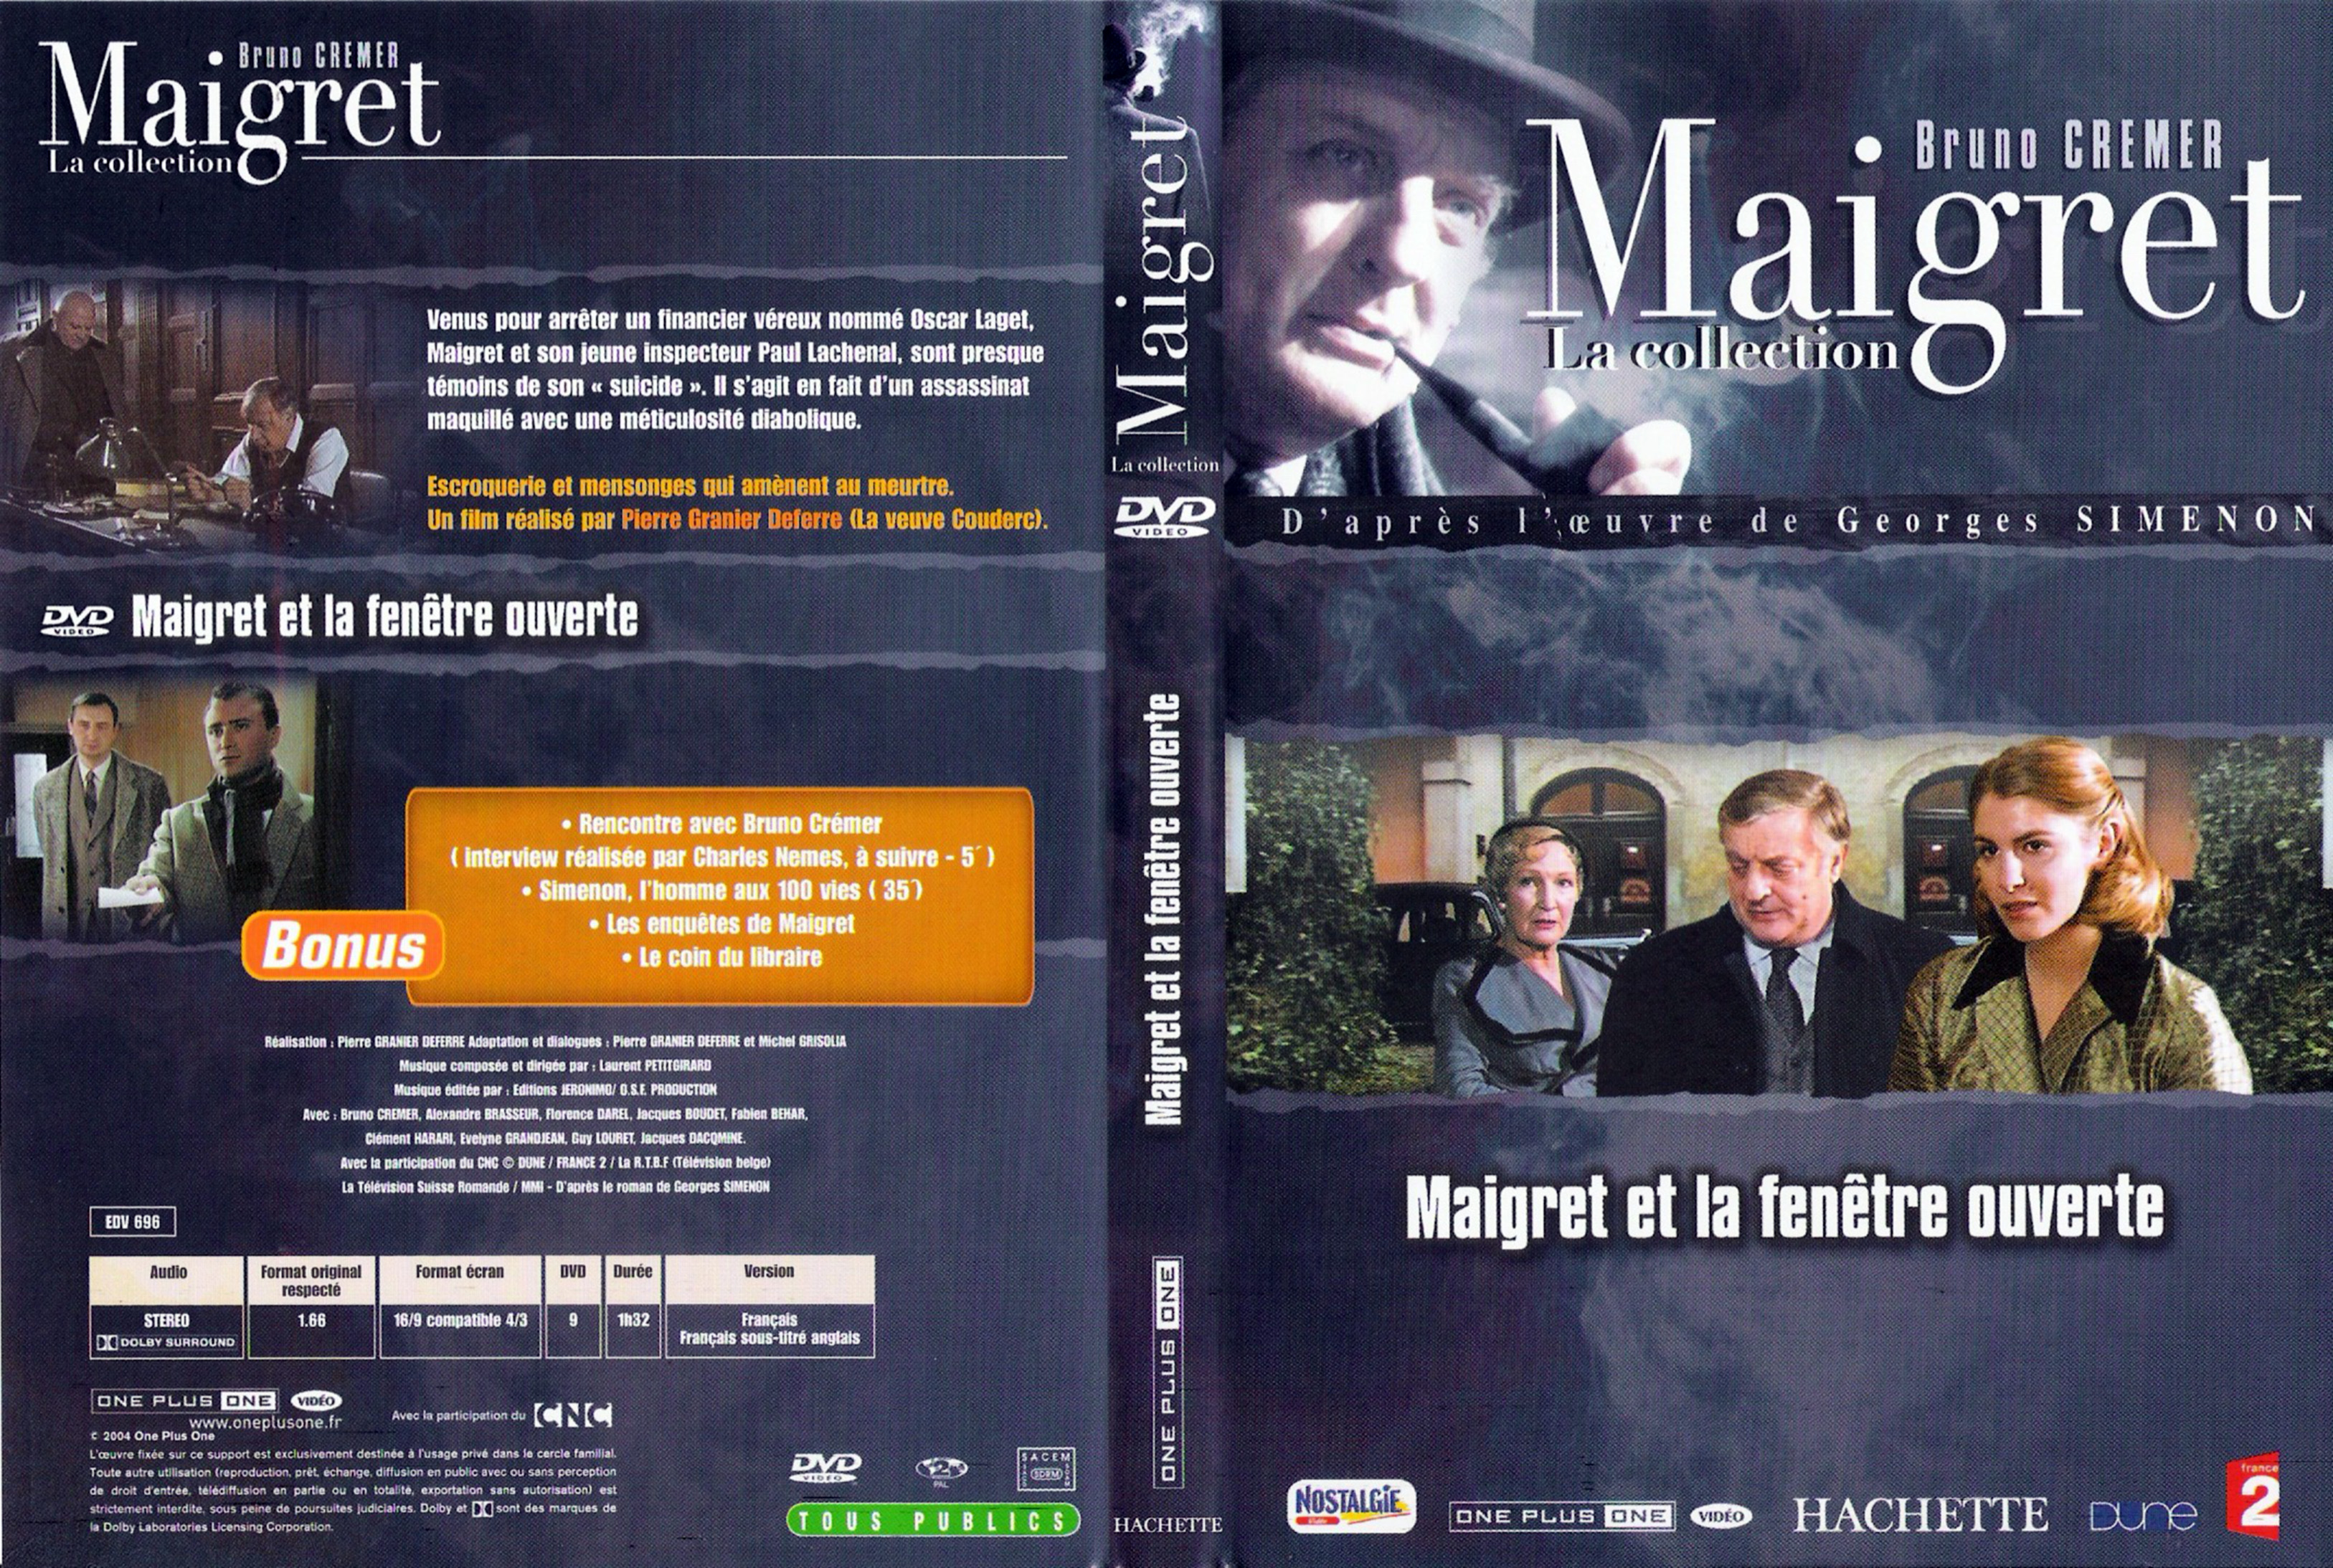 Jaquette DVD Maigret et la fenetre ouverte (Bruno Cremer)